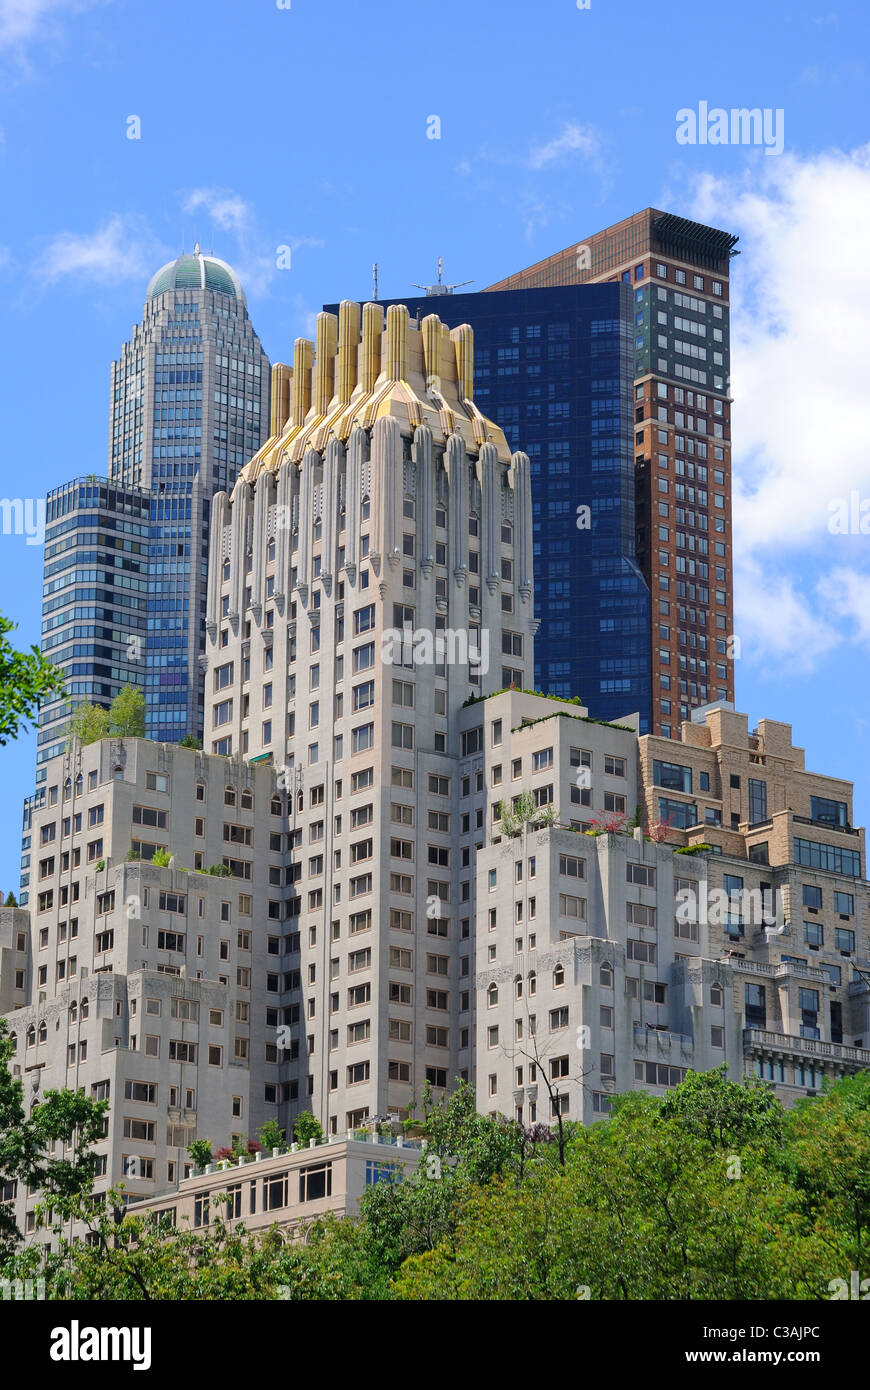 Les appartements et les immeubles de bureaux autour de Central Park à New York. Banque D'Images